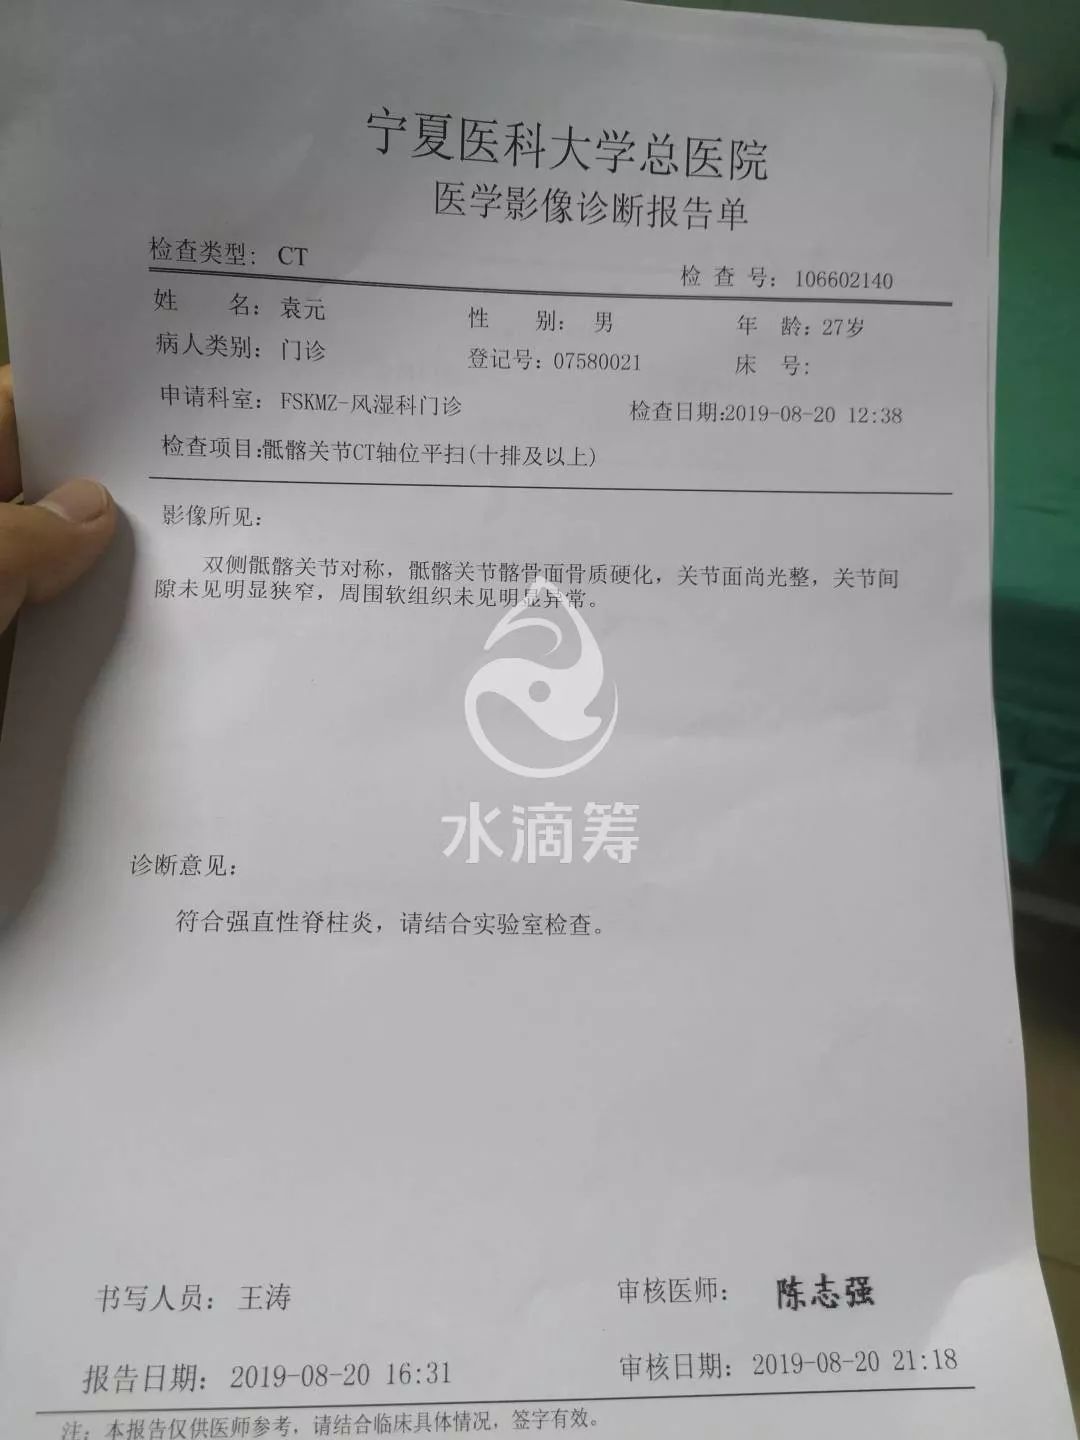 袁元,今年27岁,于2019年8月20日确诊为强直性脊柱炎,看着一个刚出生的